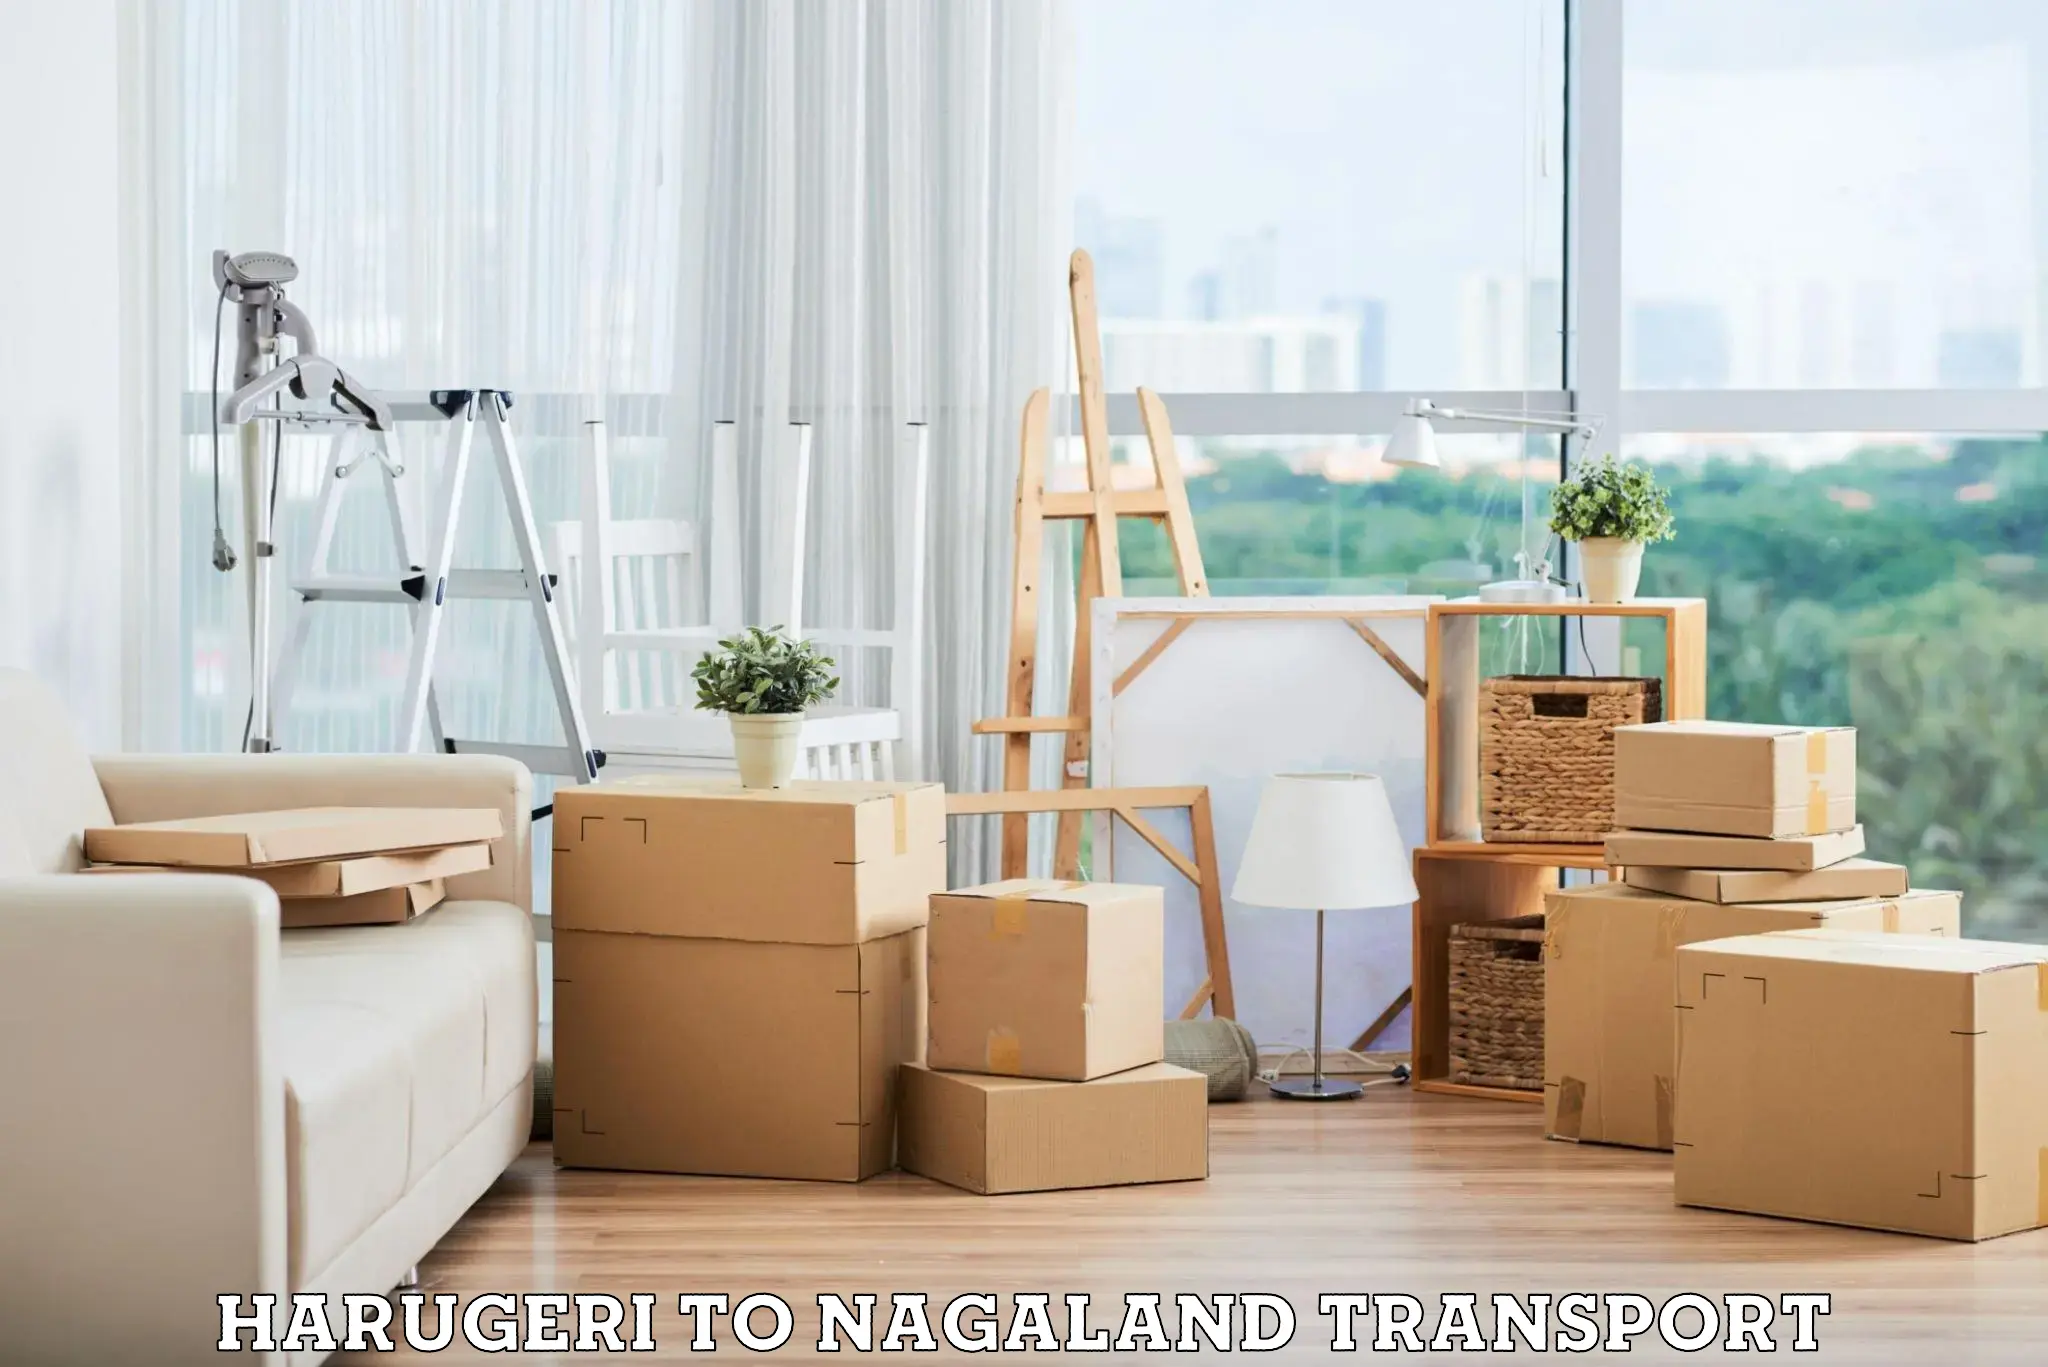 Vehicle parcel service Harugeri to Nagaland